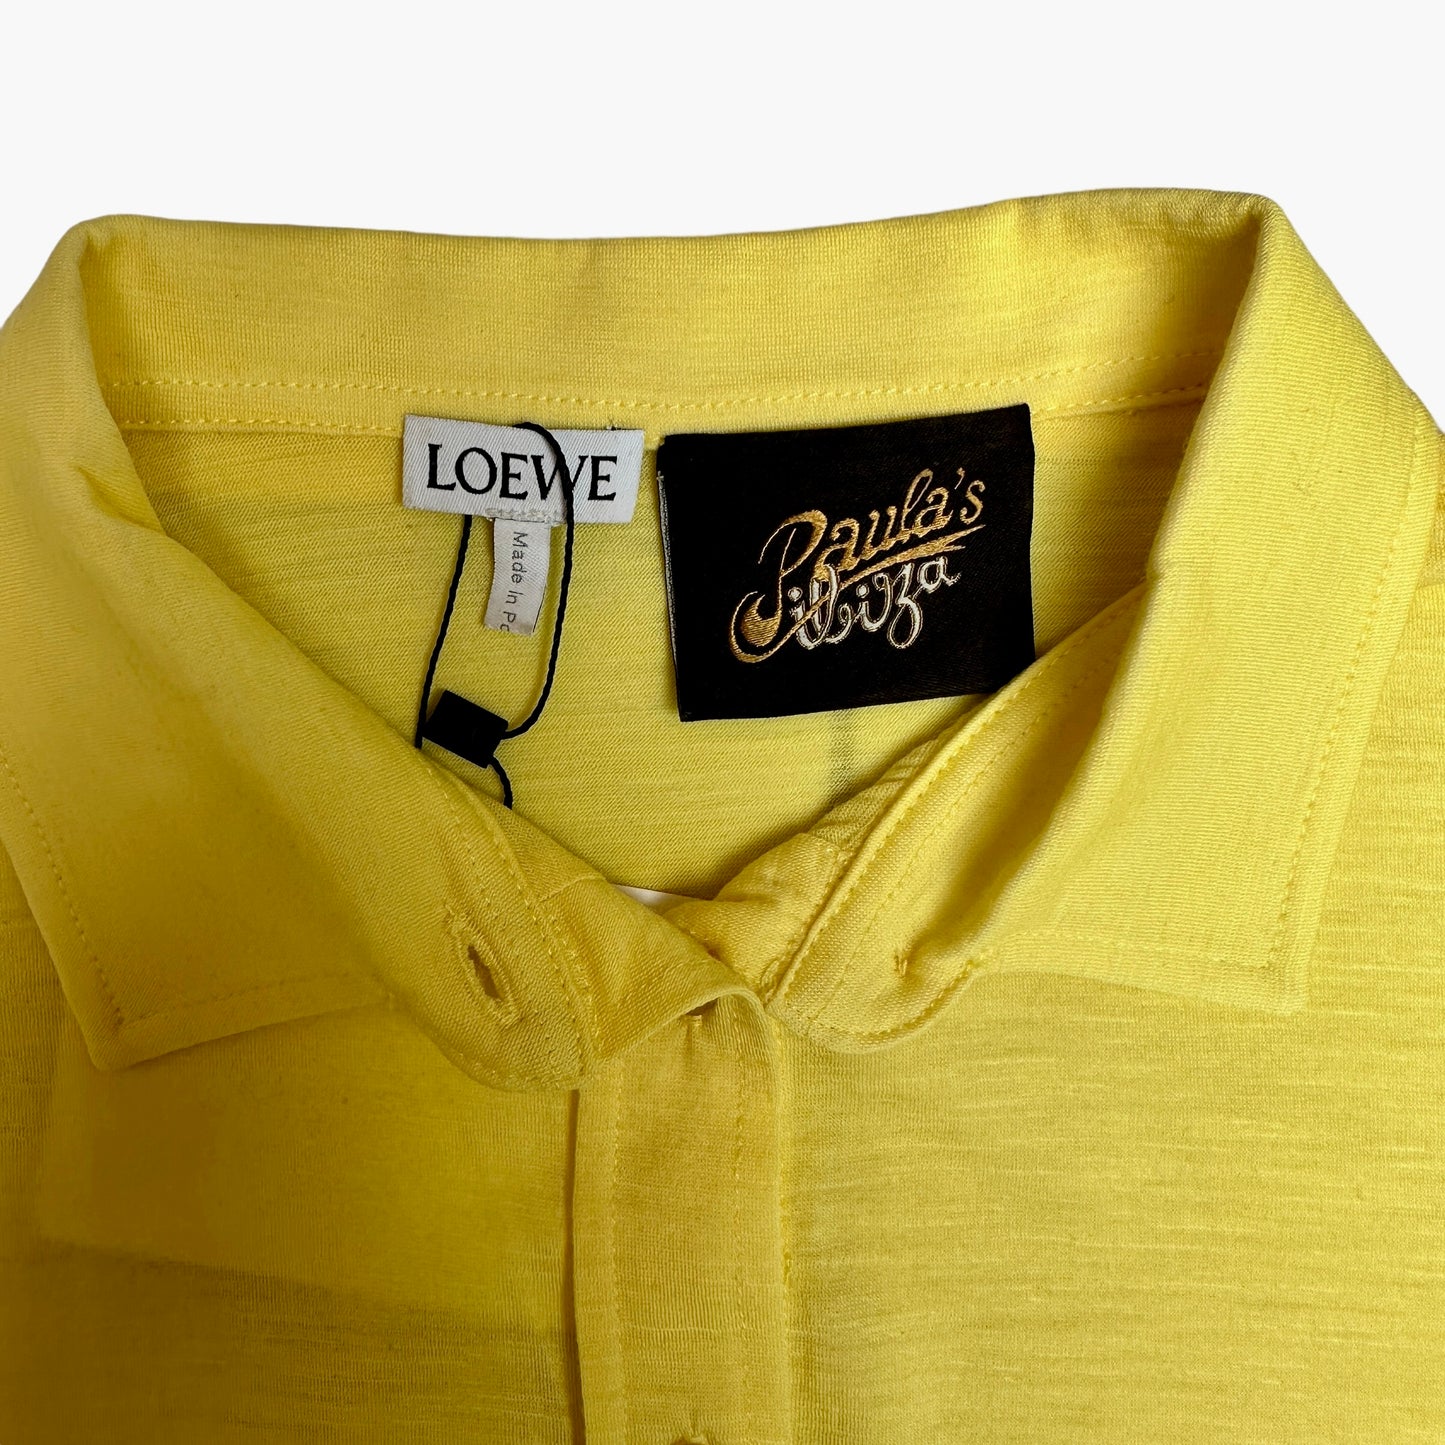 Yellow 2022 Crop Shirt - XS